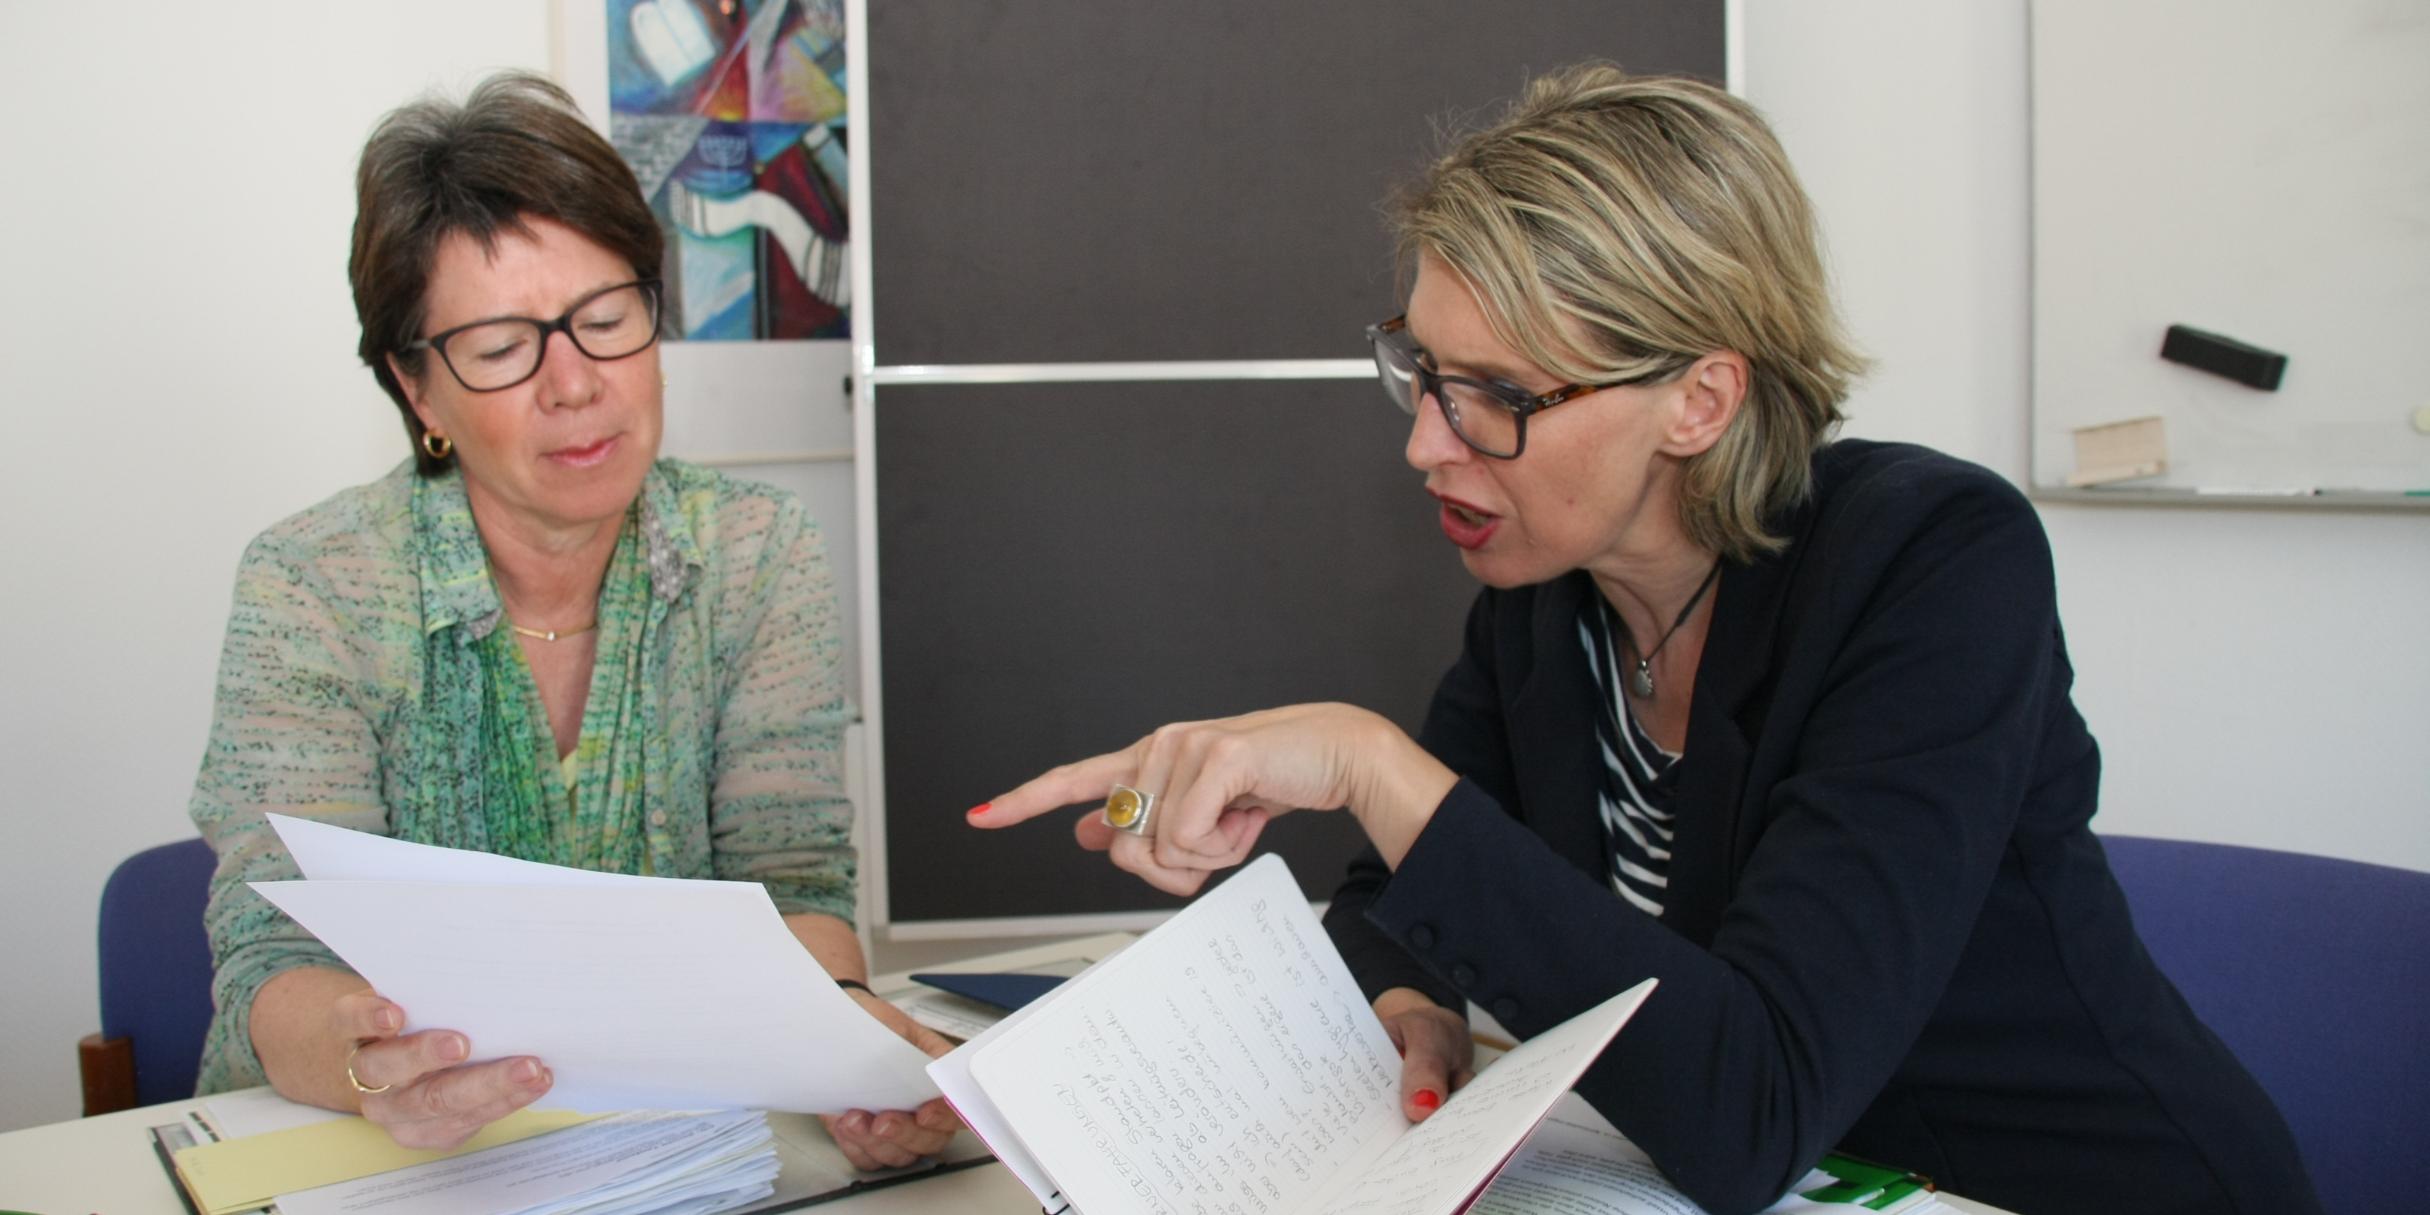 Mentorin Angela Thelen (links) und Mentee Eva-Maria Dech (rechts) treffen sich regelmäßig zum gemeinsamen Austausch.